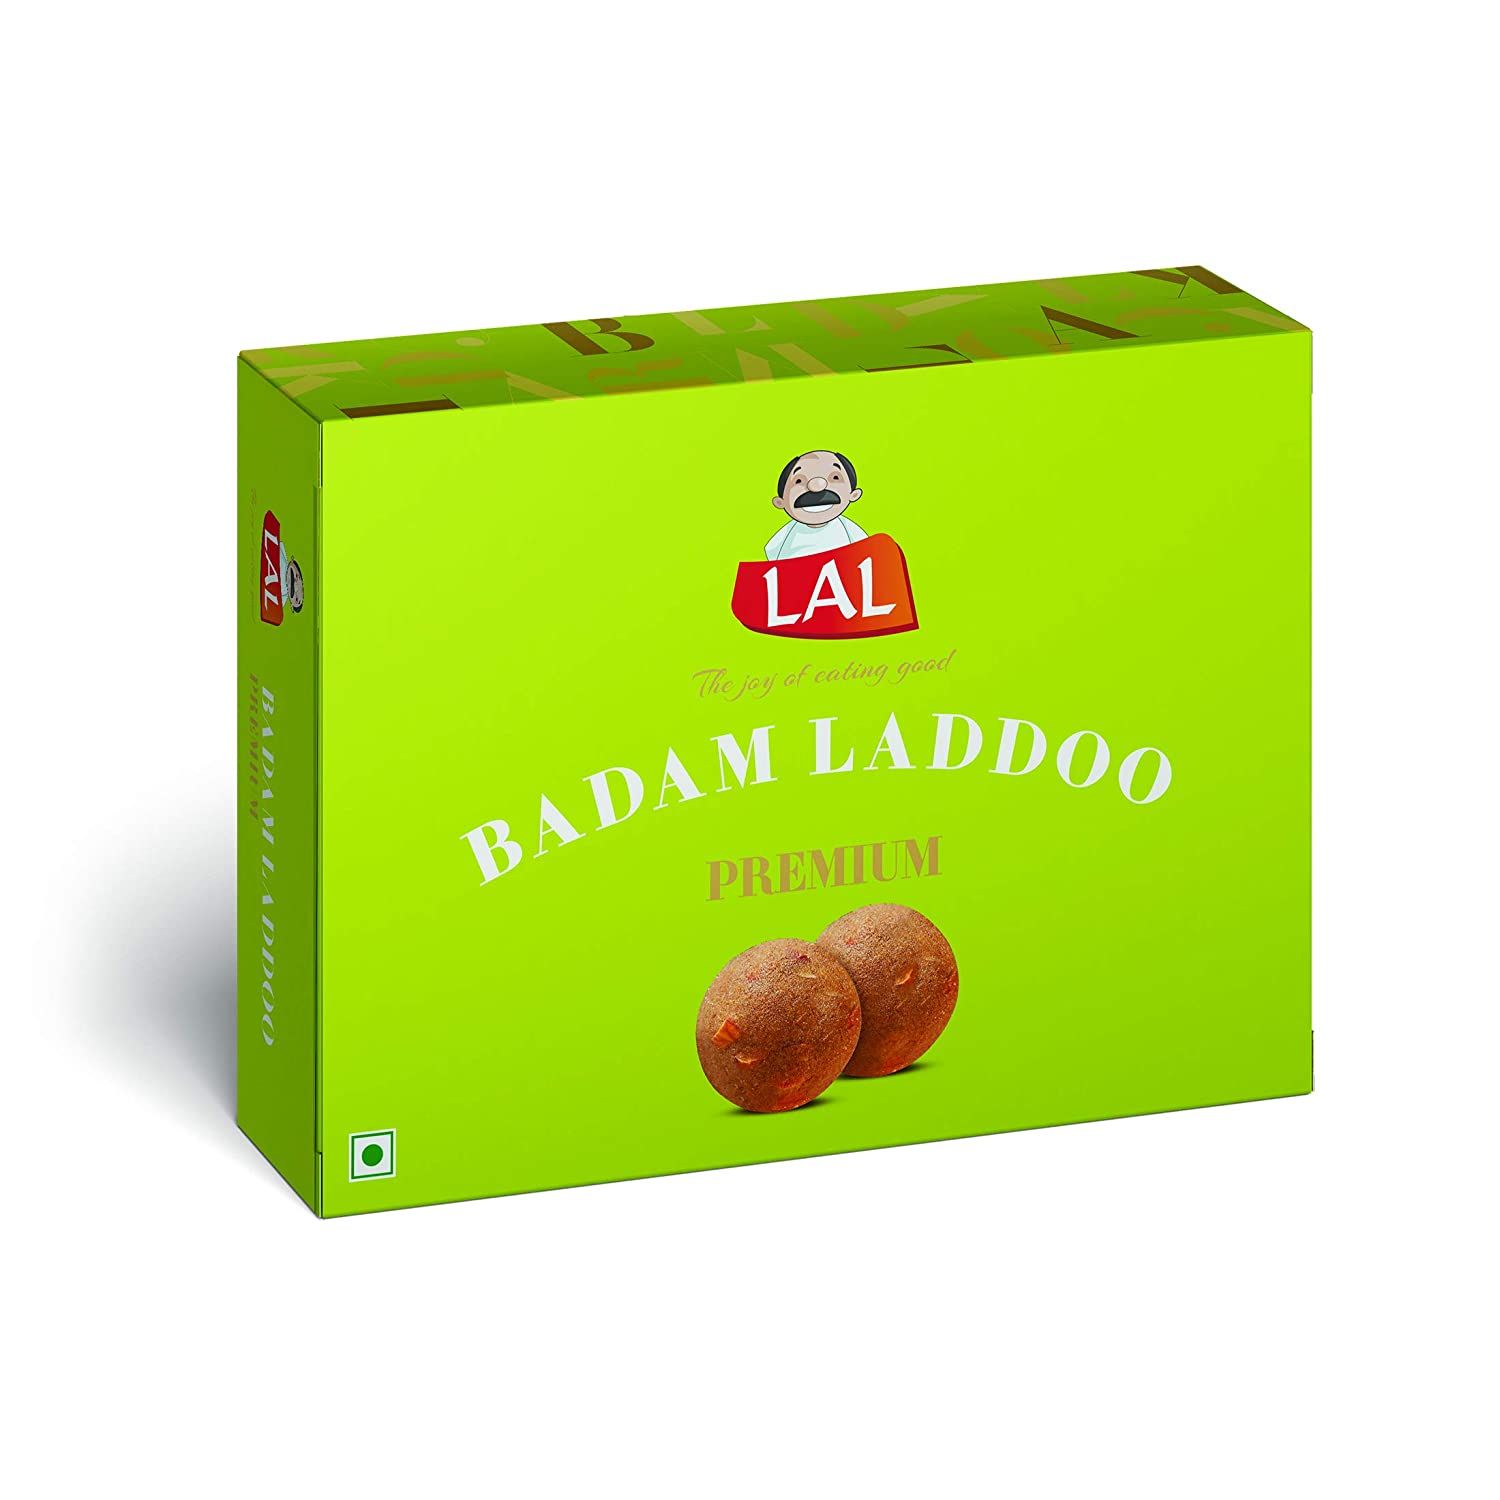 Lal Sweets Badam Laddoo Image